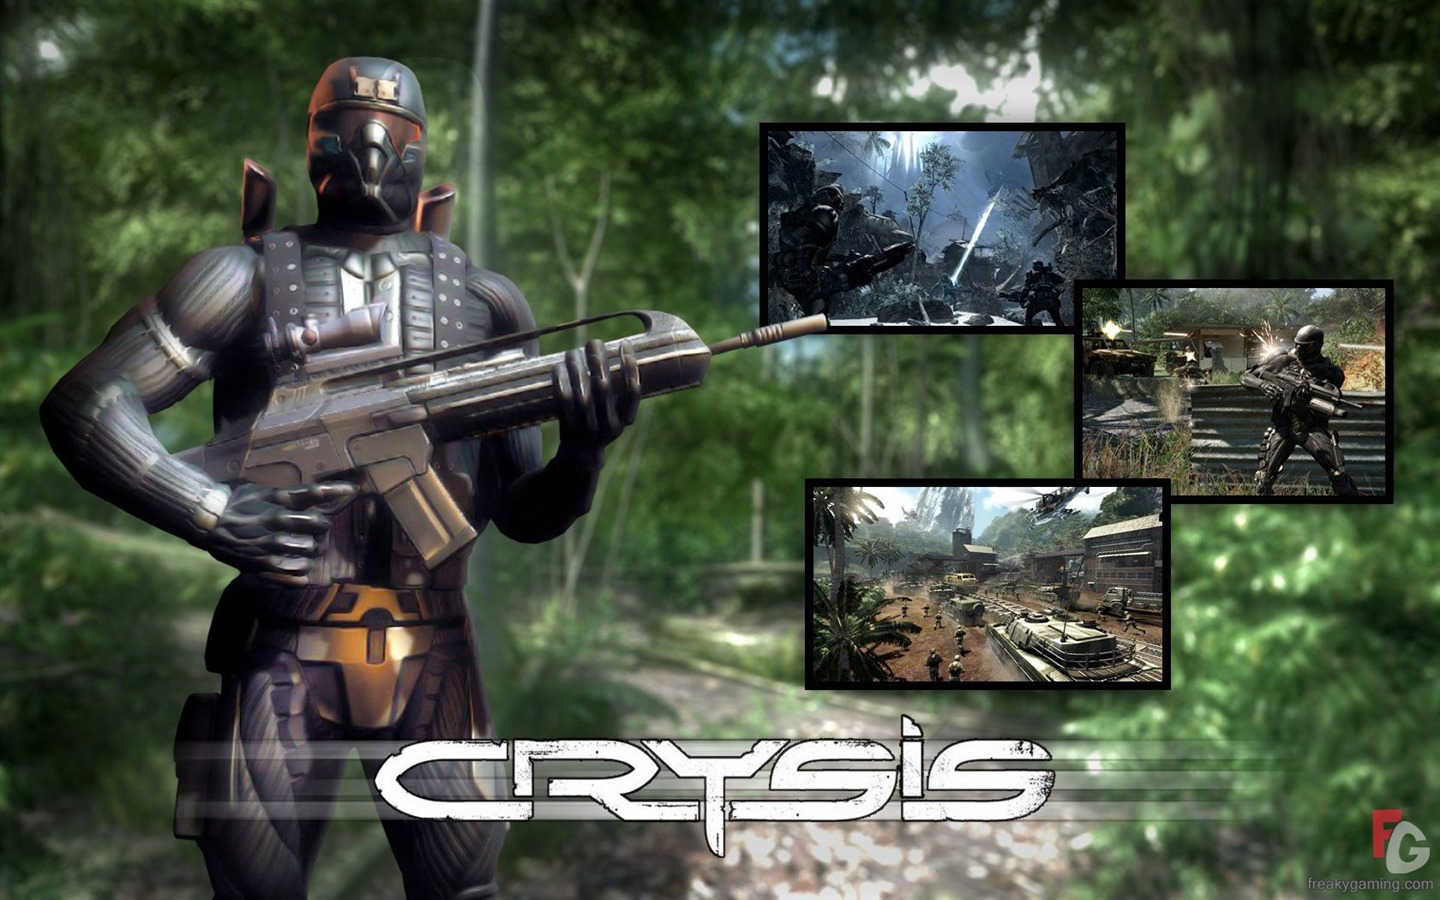  Crysisの壁紙(3) #16 - 1440x900